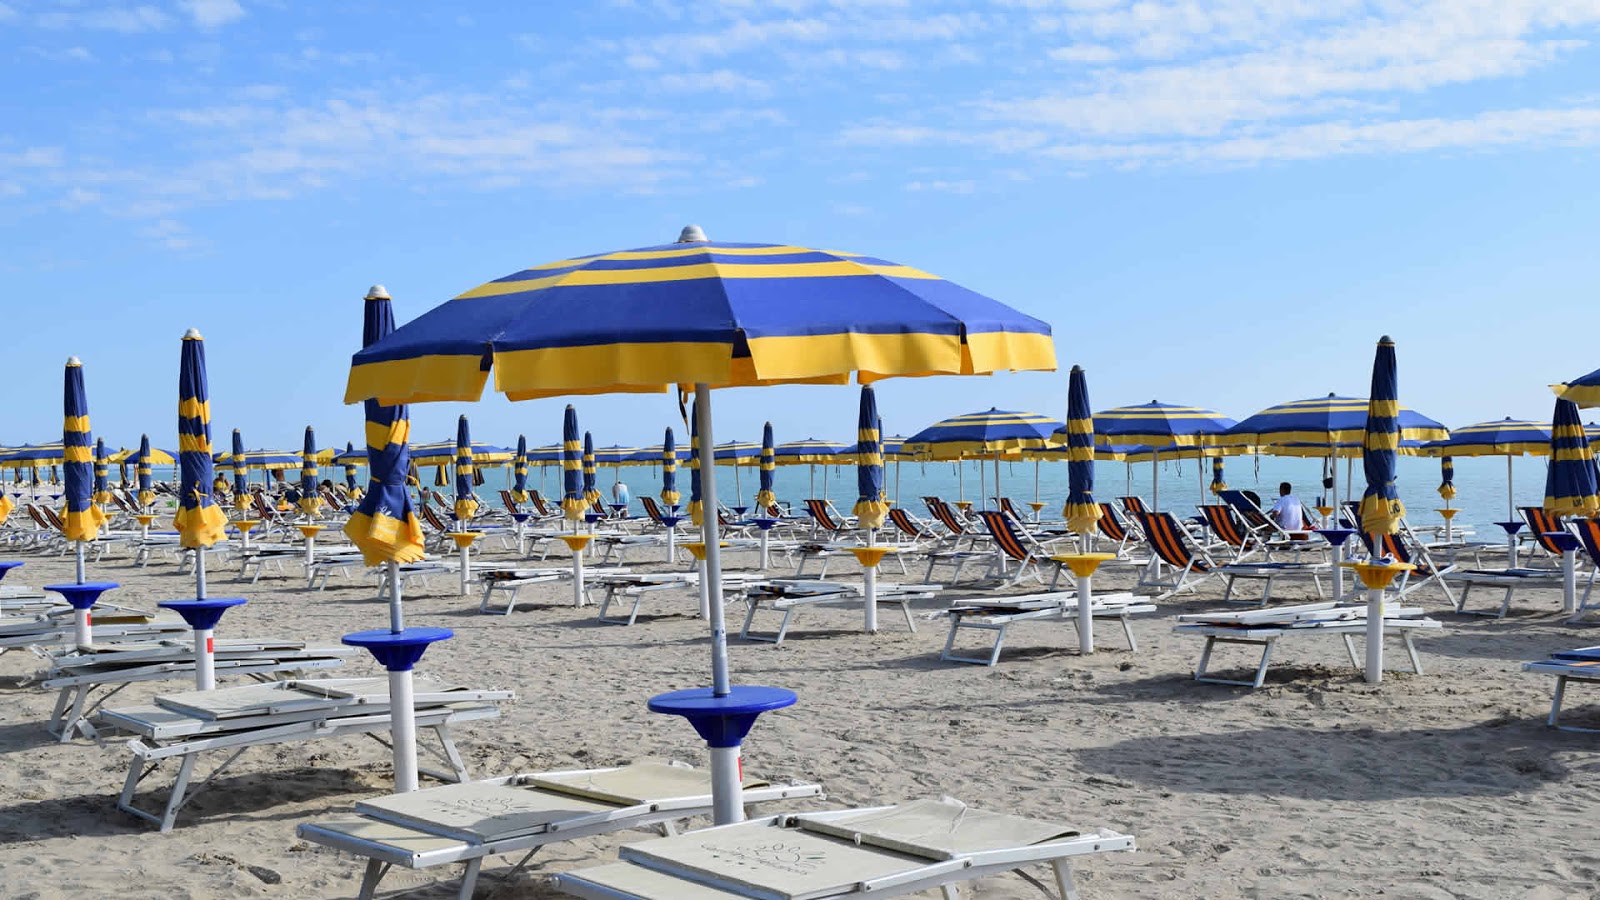 Foto av Spiaggia Pineto och bosättningen